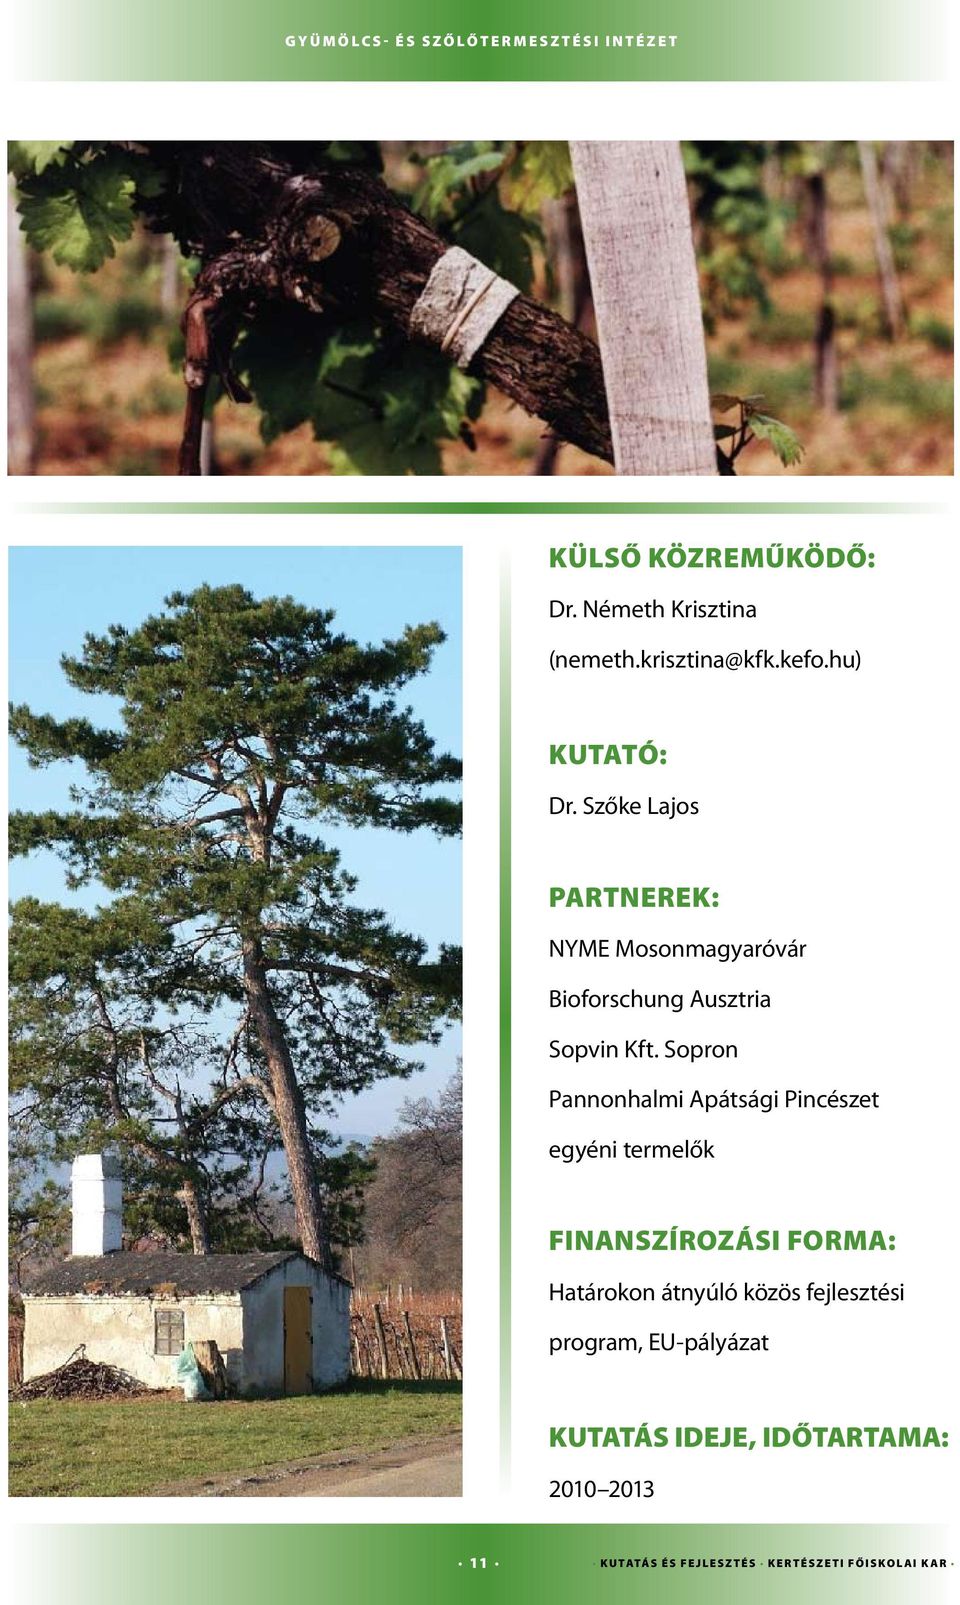 Sopron Pannonhalmi Apátsági Pincészet egyéni termelők Finanszírozási forma: Határokon átnyúló közös